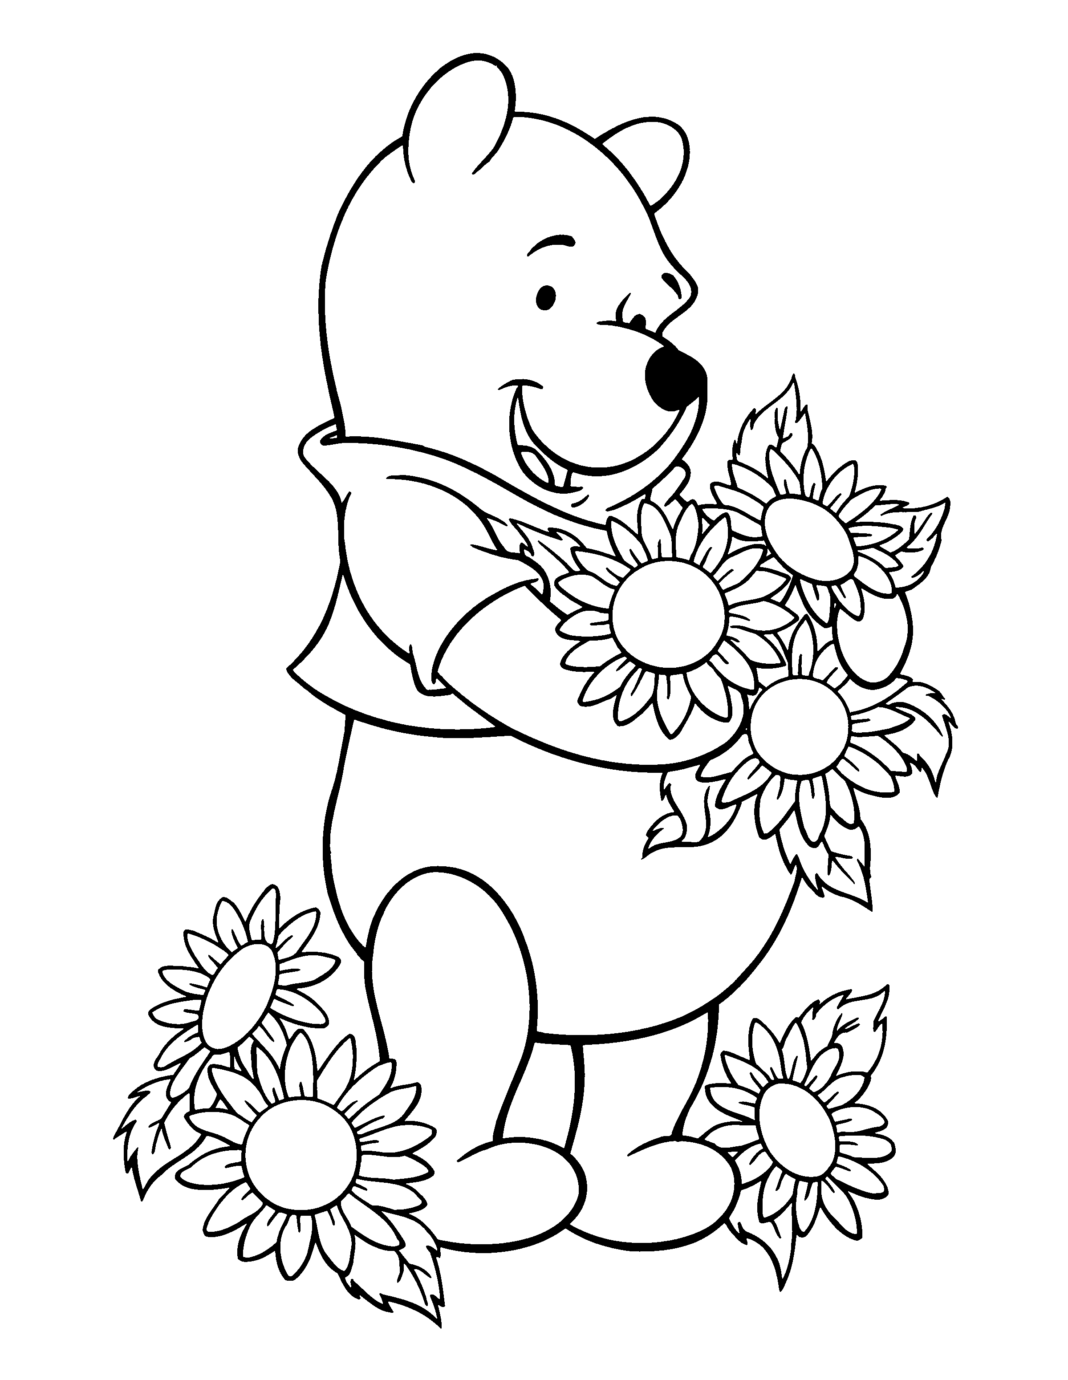 livro colorido online Winnie the Pooh com girassóis